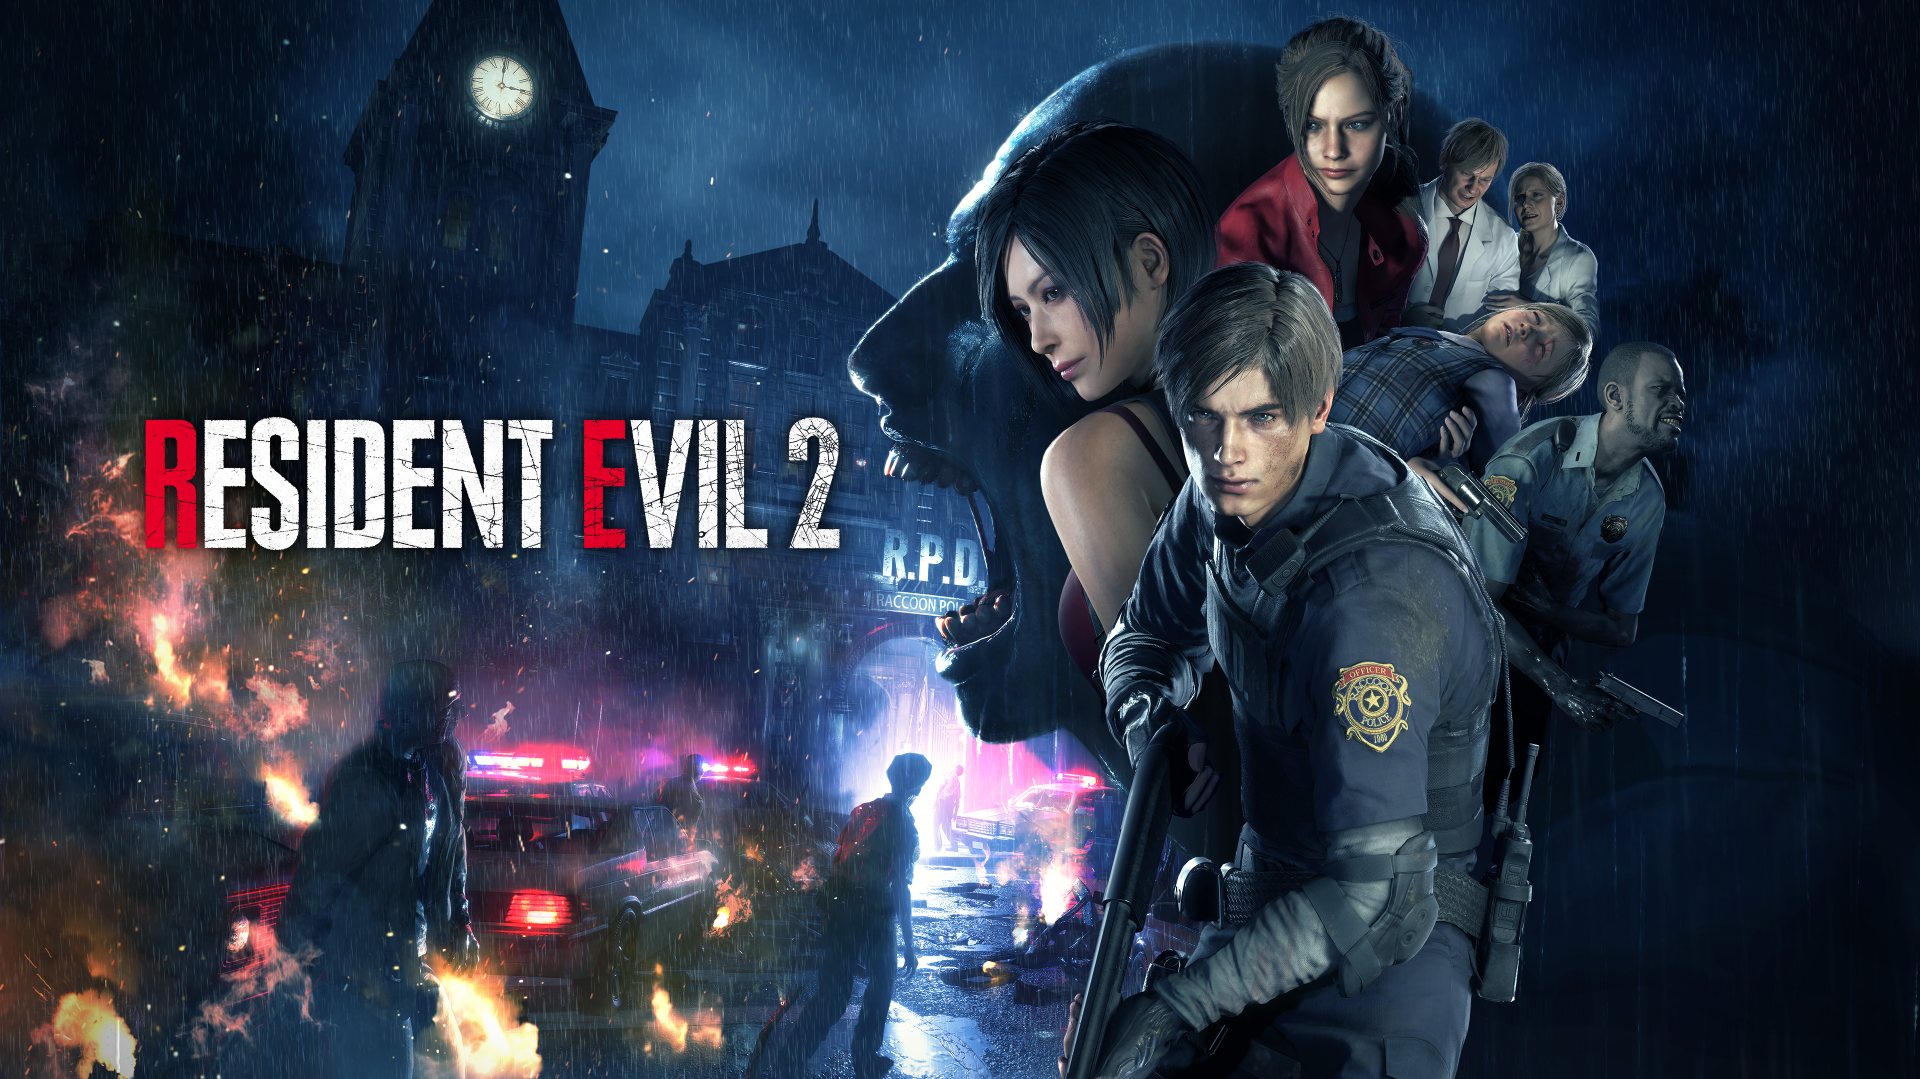 Resident Evil 2 2019 4k Ultra HD Wallpaper